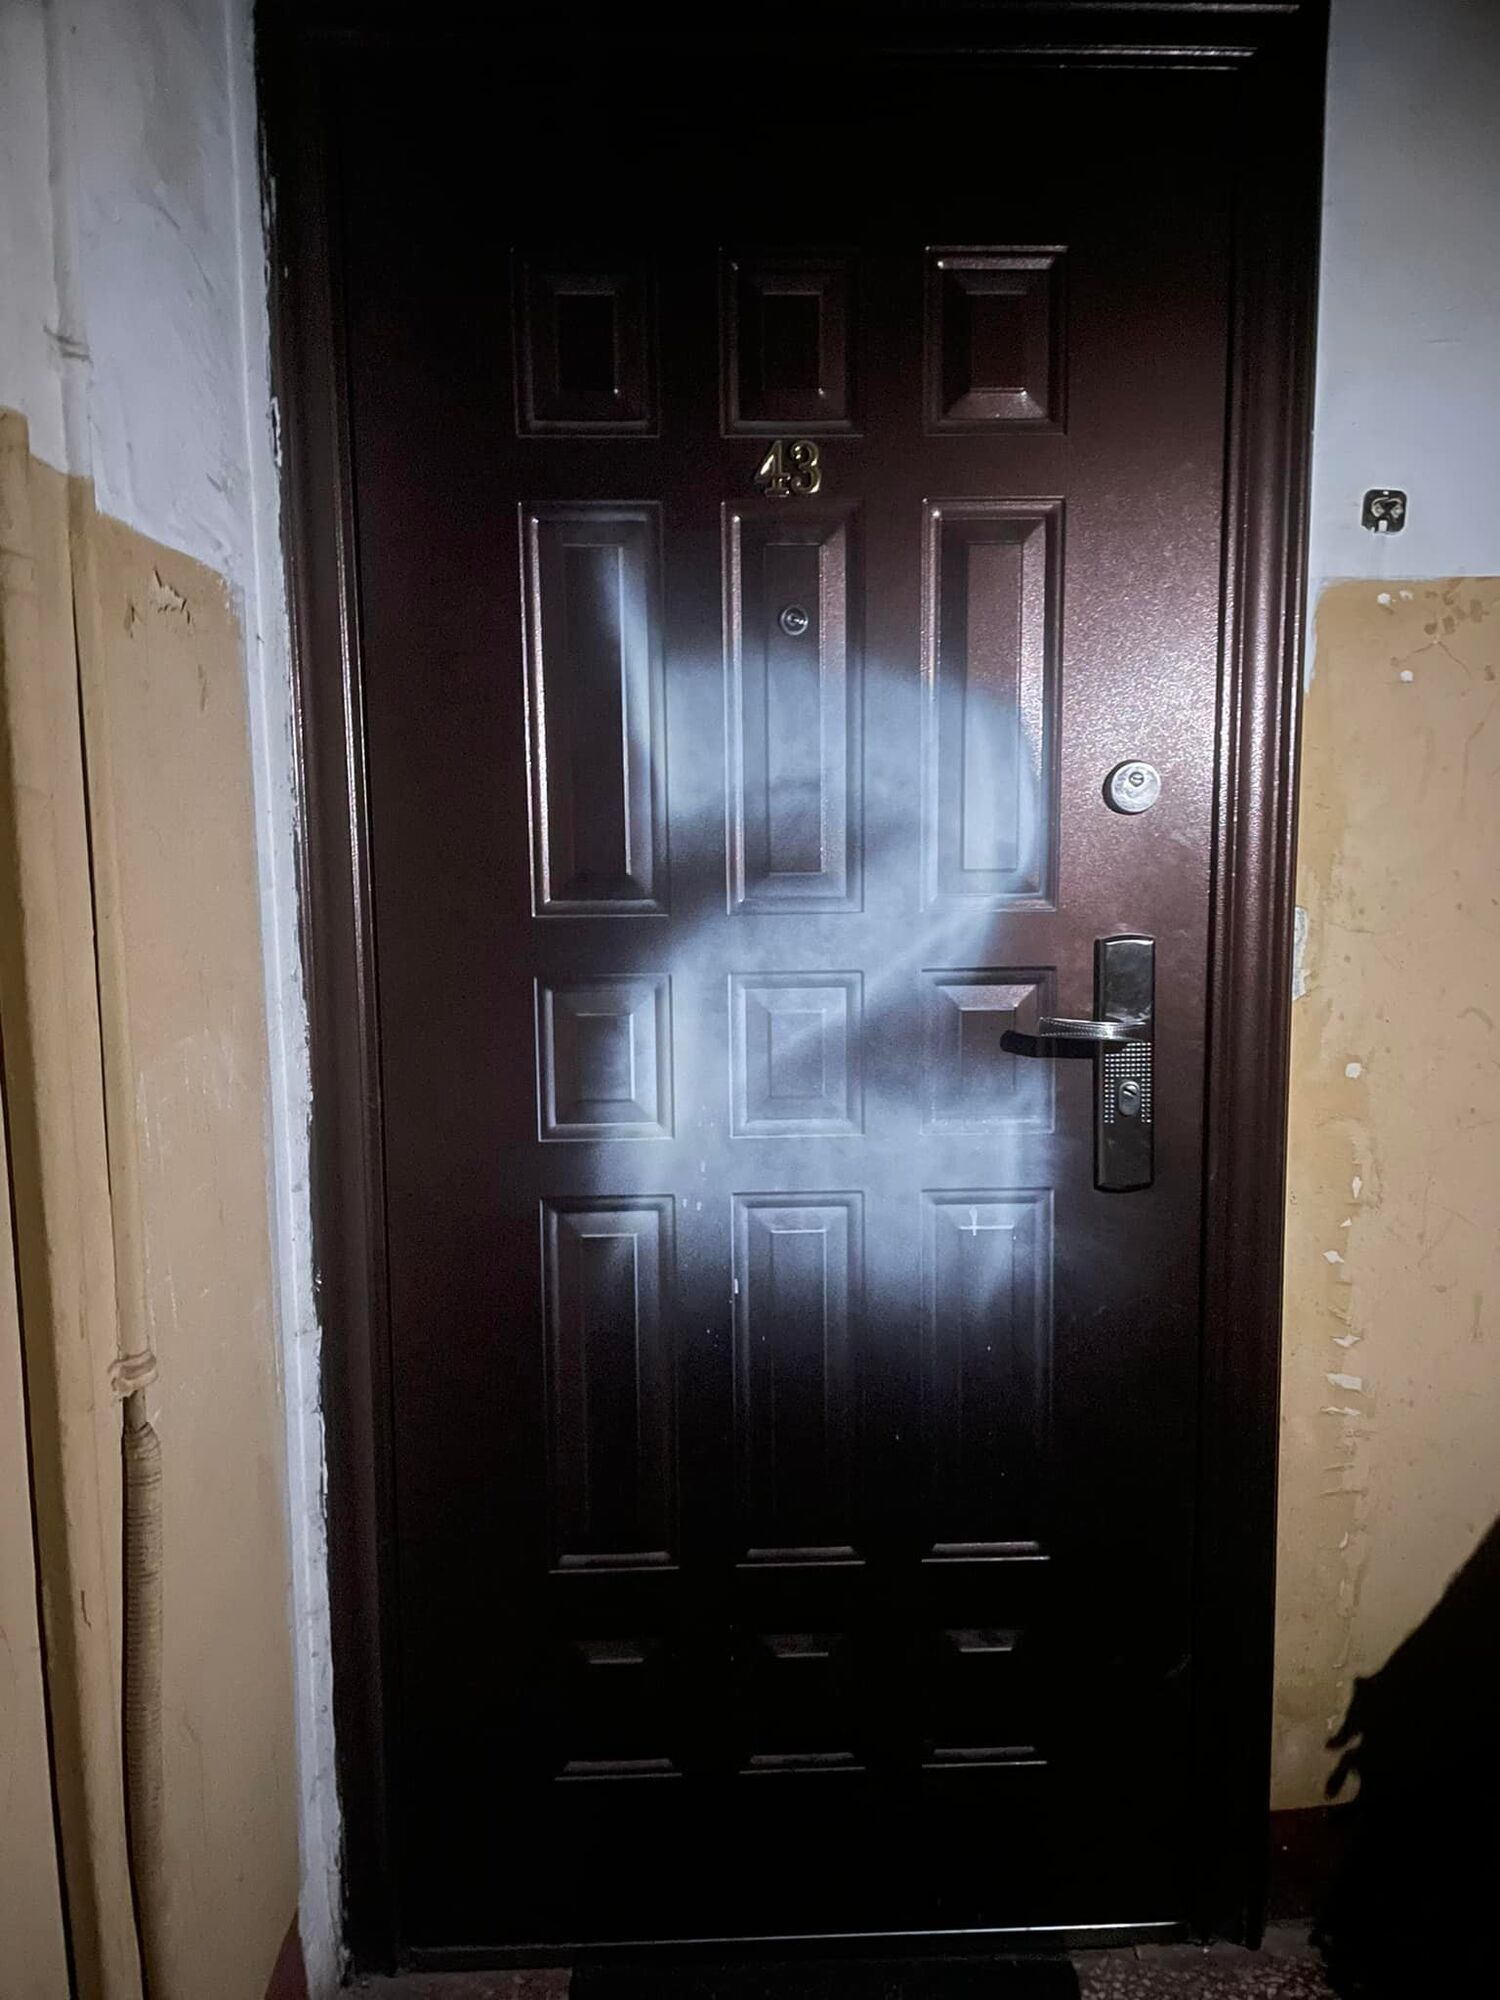 На двери квартиры кинокритика в Москве нарисовали символ Z.